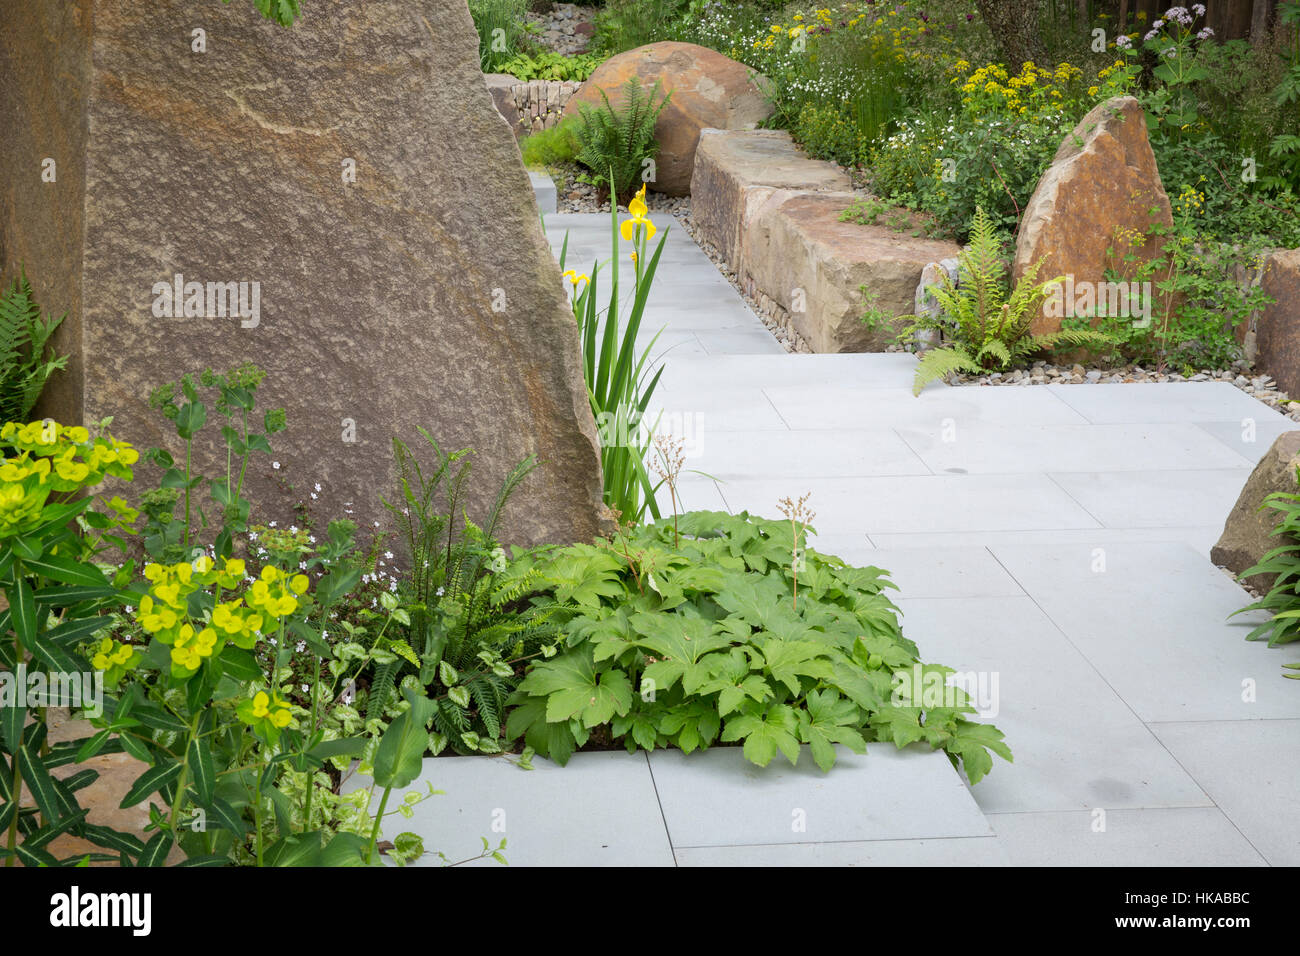 Chemin de jardin pavé en pierre dans un jardin contemporain avec des blocs de pierre pour les lits surélevés le jardin M&G, Cleve West, Chelsea Flower Show, Londres, Royaume-Uni Banque D'Images